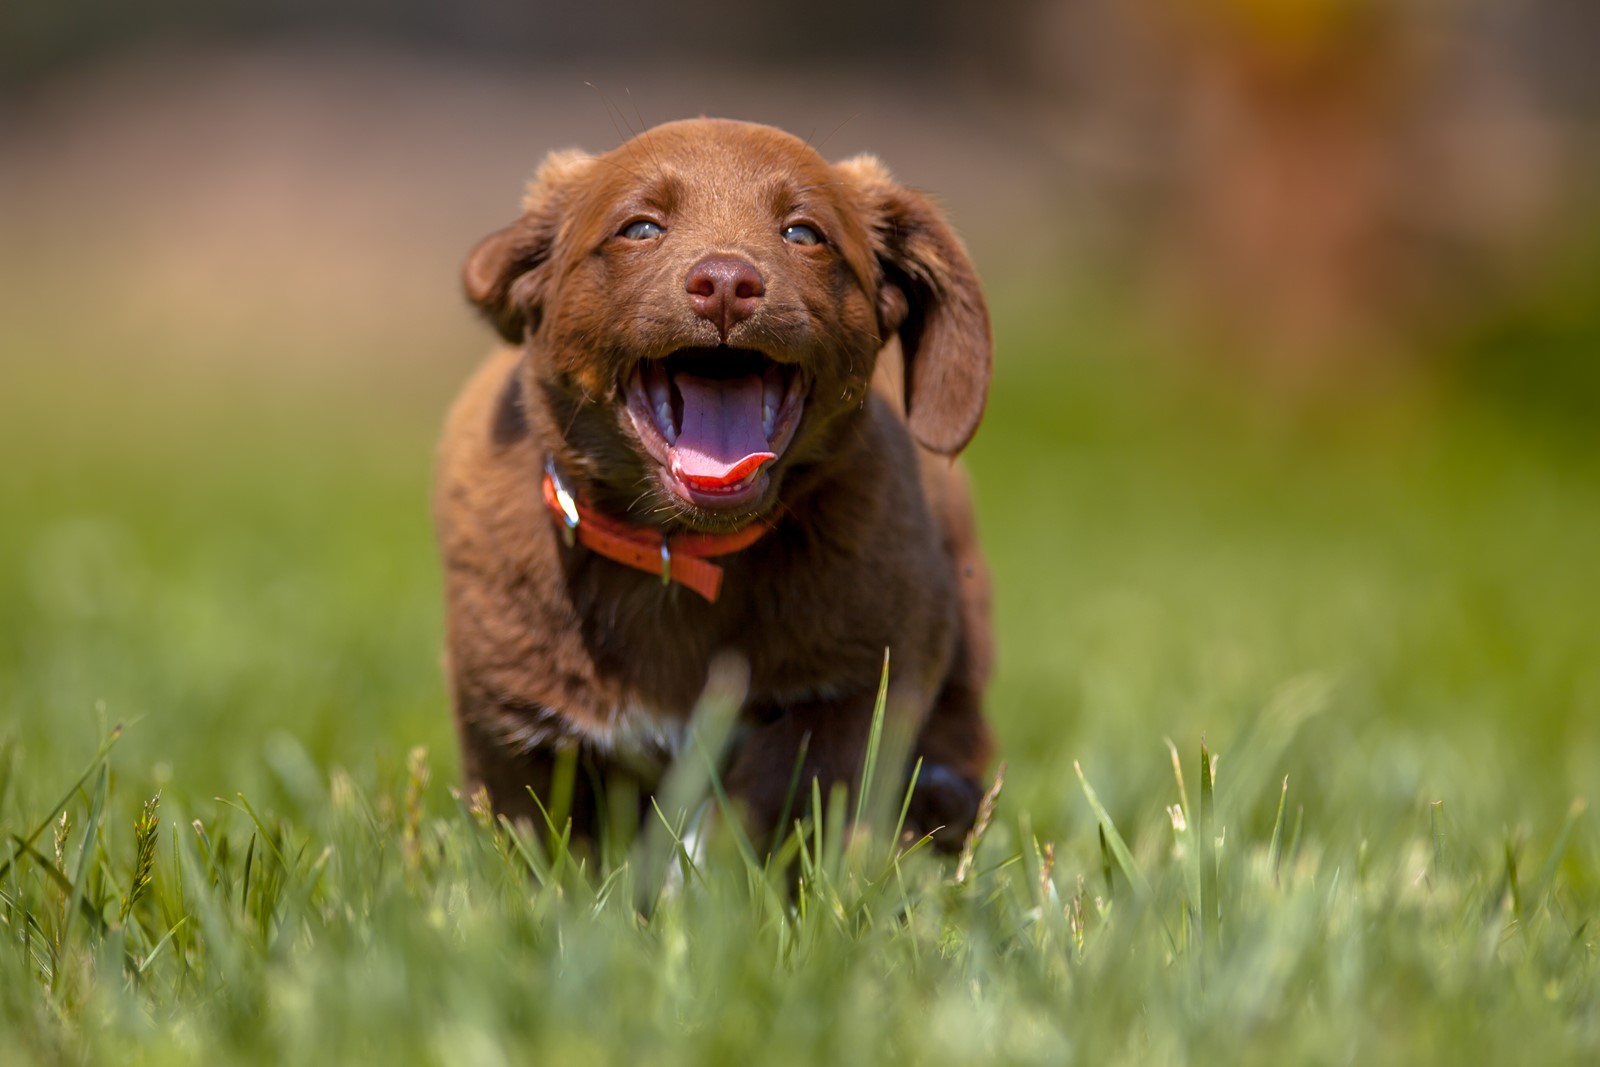 Dog Beagle running fast